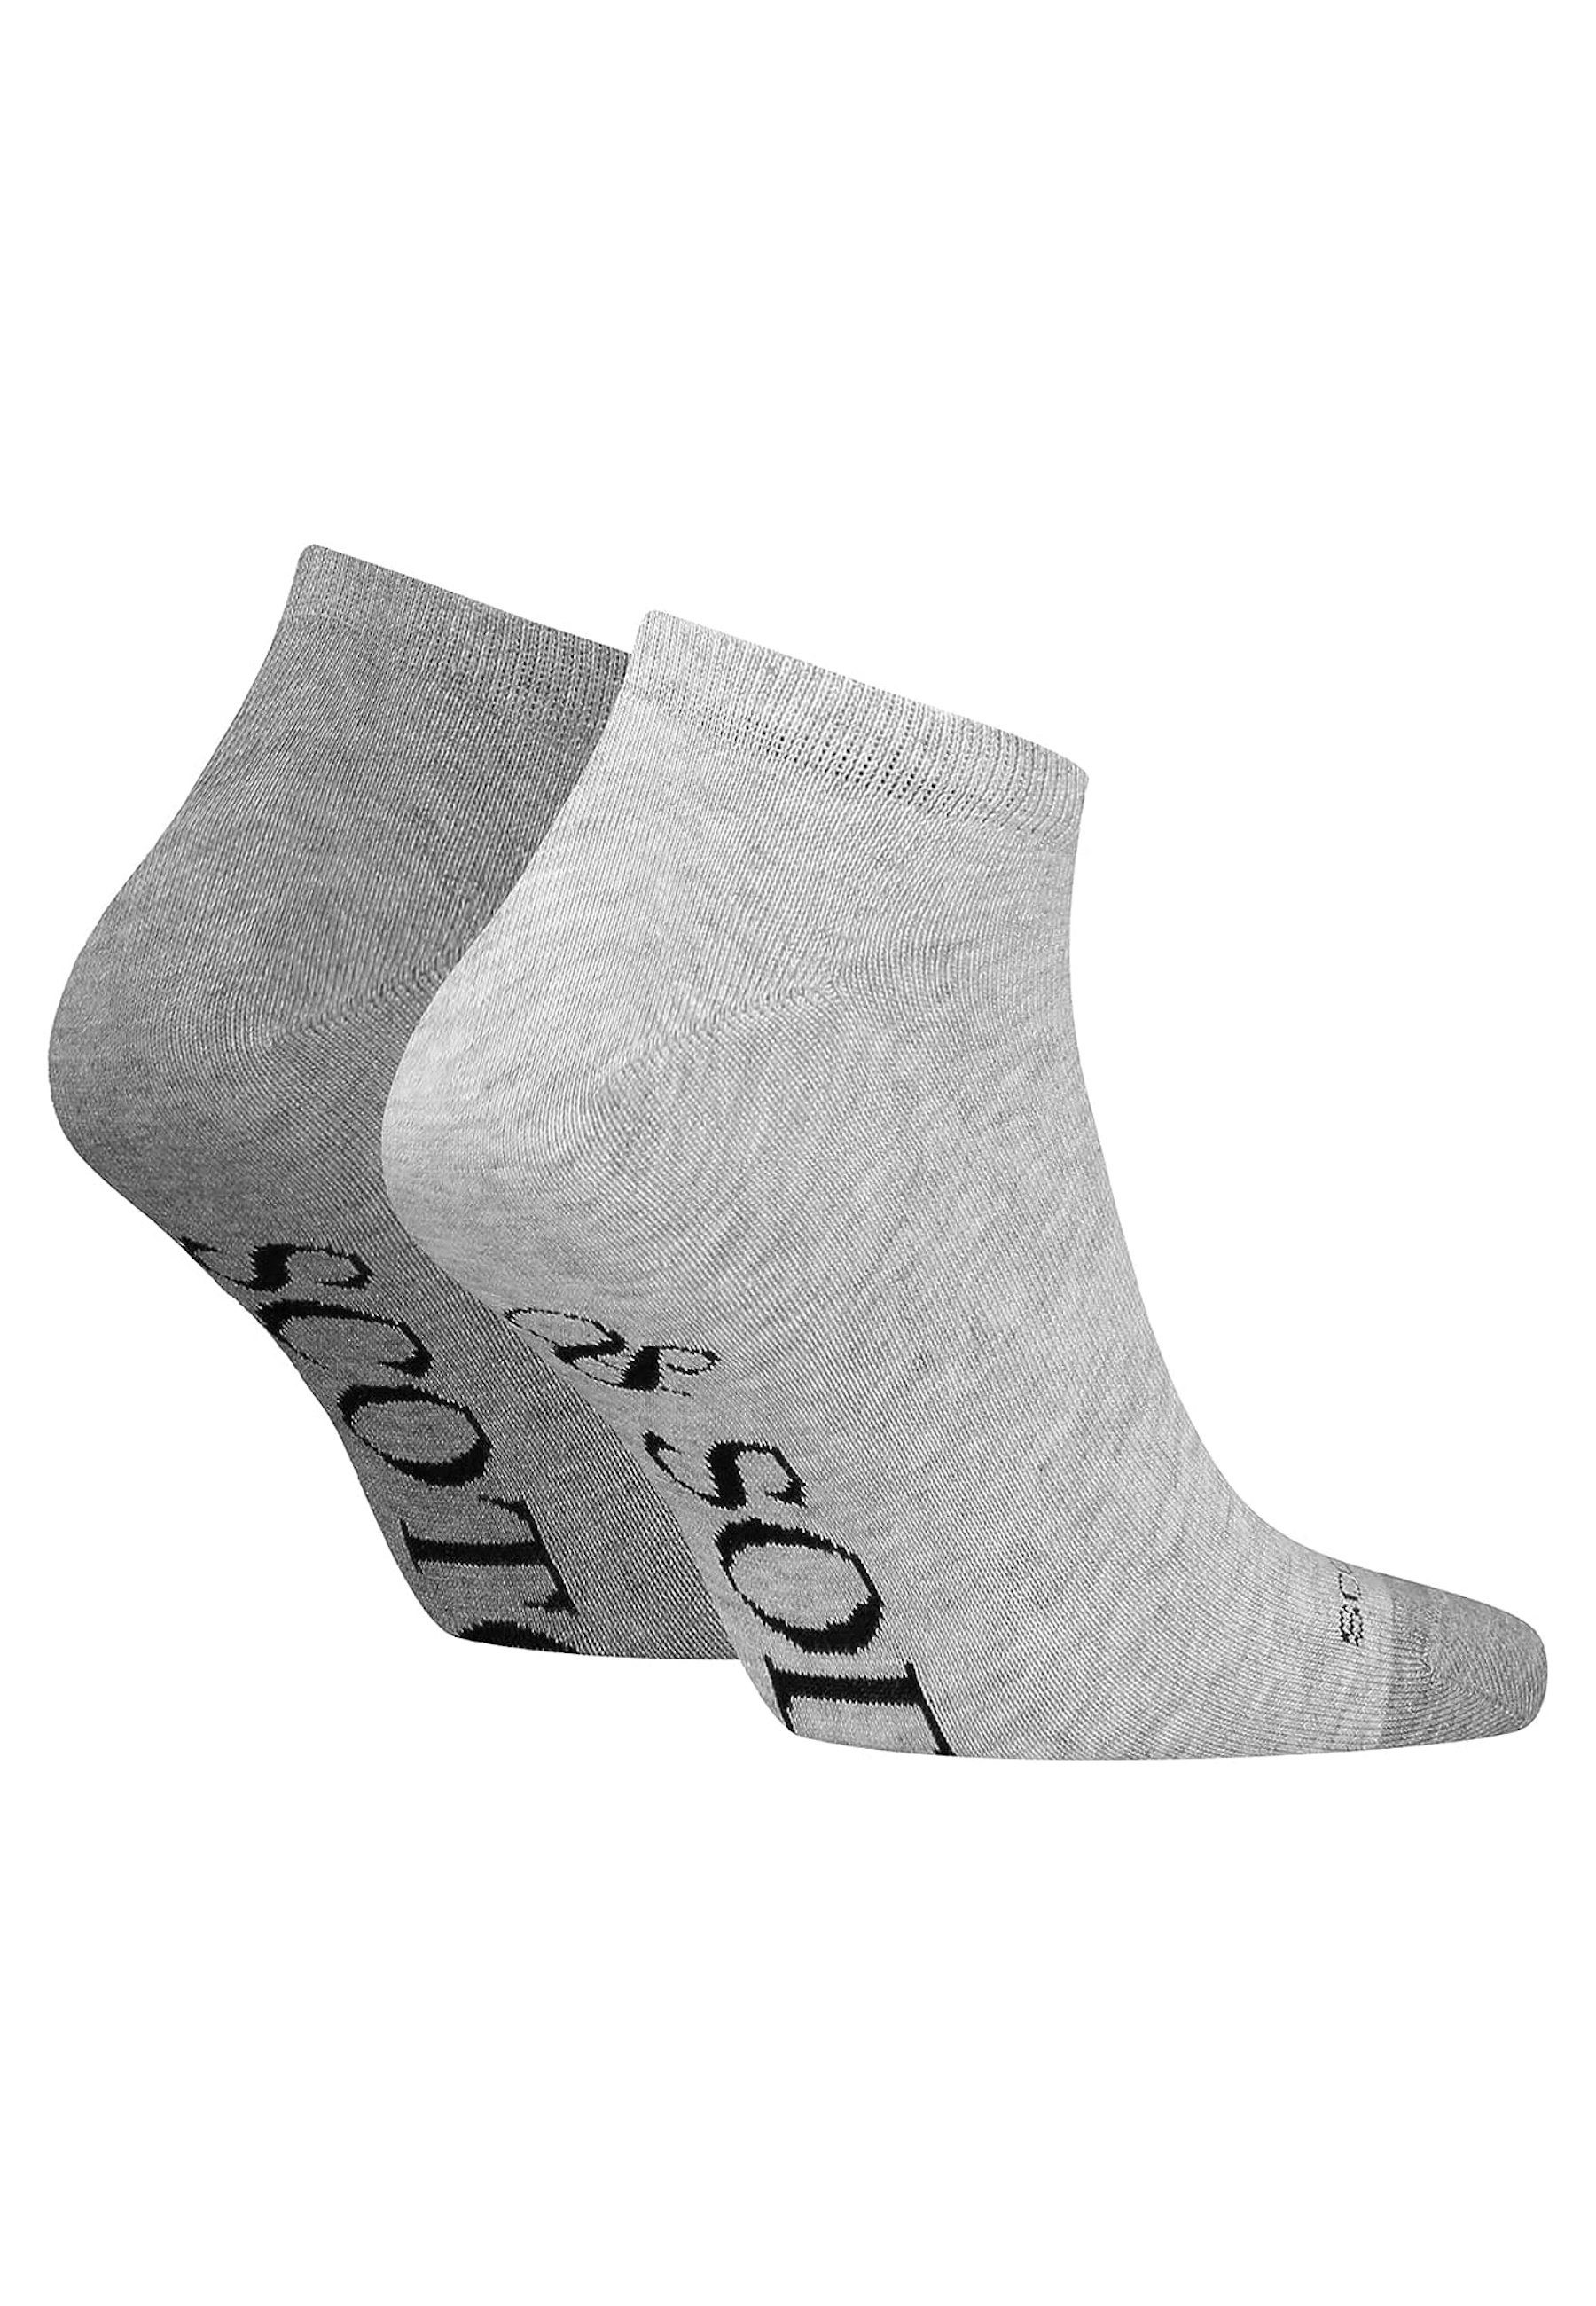 Dip Soda & Socken grau Doppelpack Scotch Socken Toe (2-Paar) Socks Sneaker